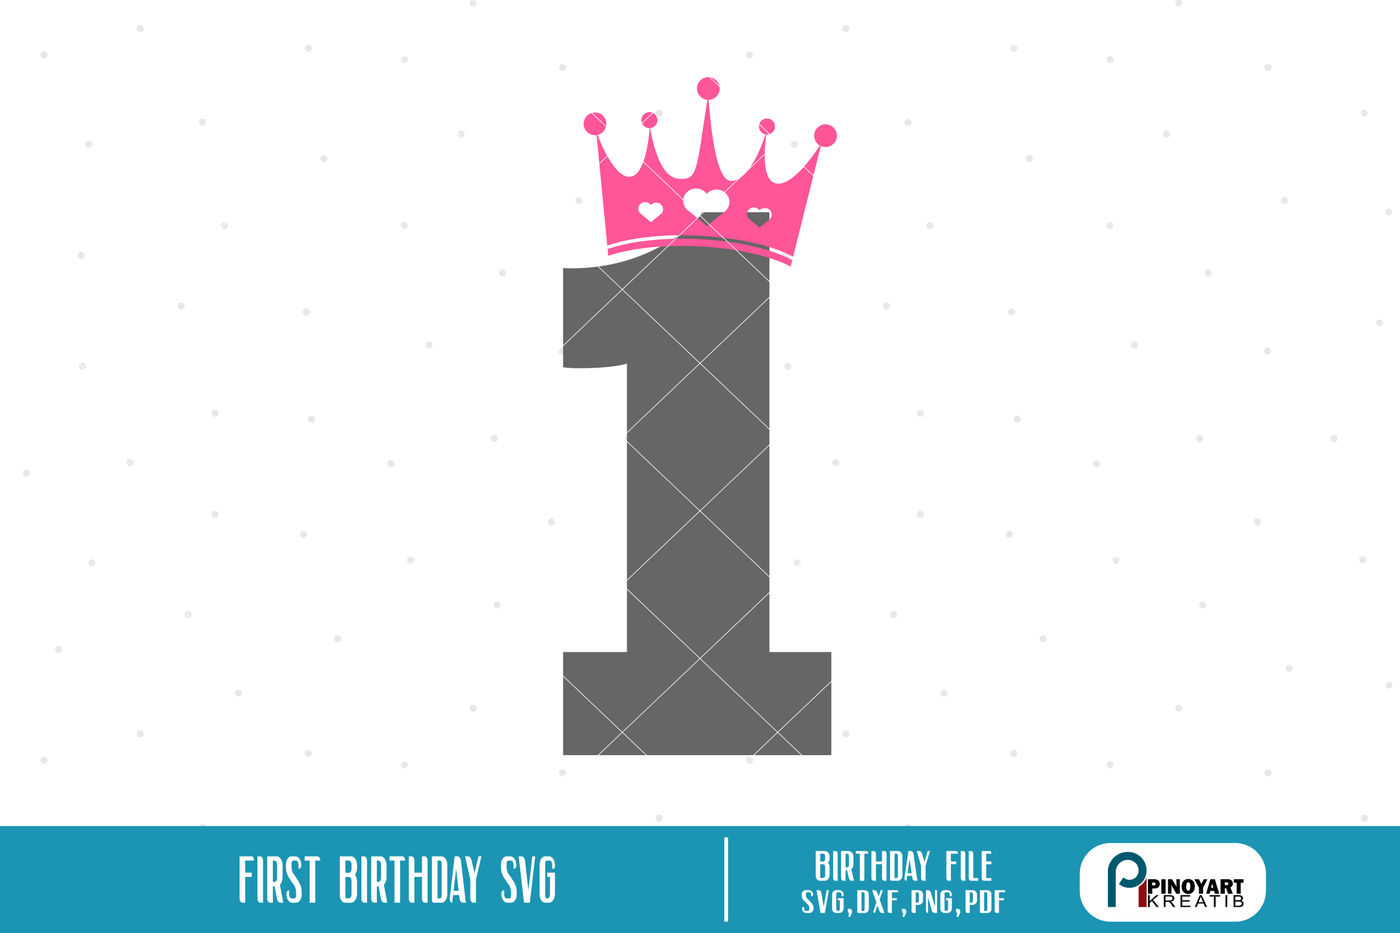 Download first birthday svg file,birthday svg file,birthday dxf file,crown svg By Pinoyart ...